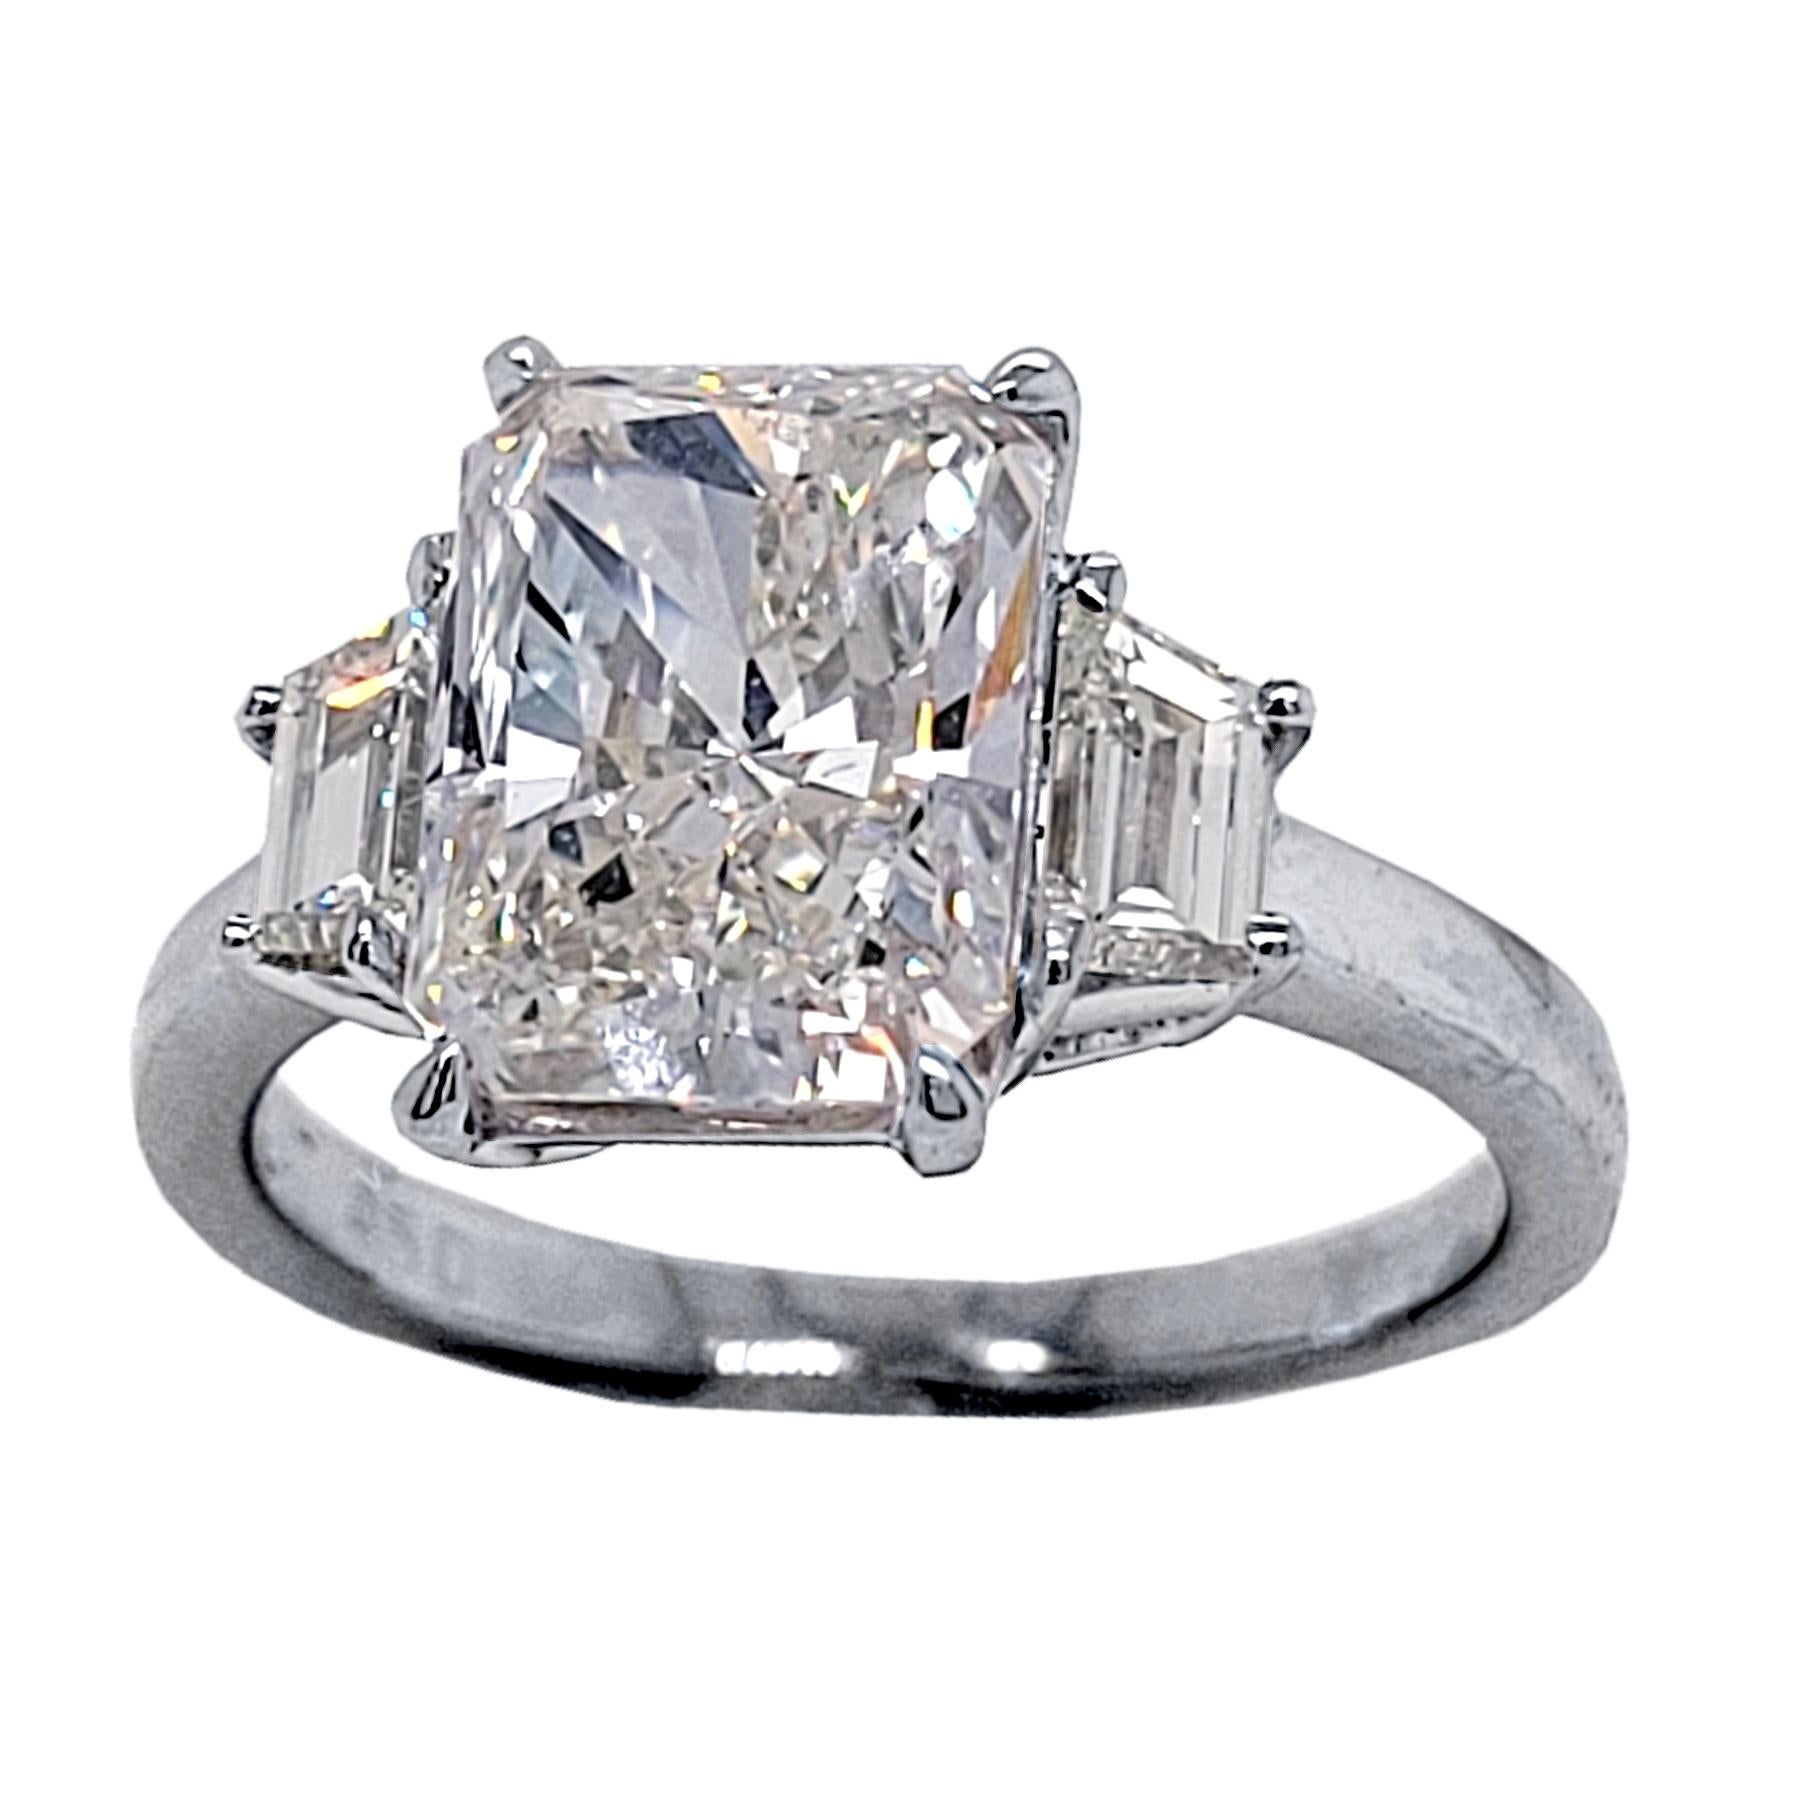 Un magnifique diamant central EGL US Certified Radiant Cut H/VS2 serti dans une belle bague de fiançailles en platine à 3 pierres avec 2 diamants trapézoïdaux sur le côté. Poids total des diamants de 0,58 Ct. diamants sur le côté. 

Caractéristiques